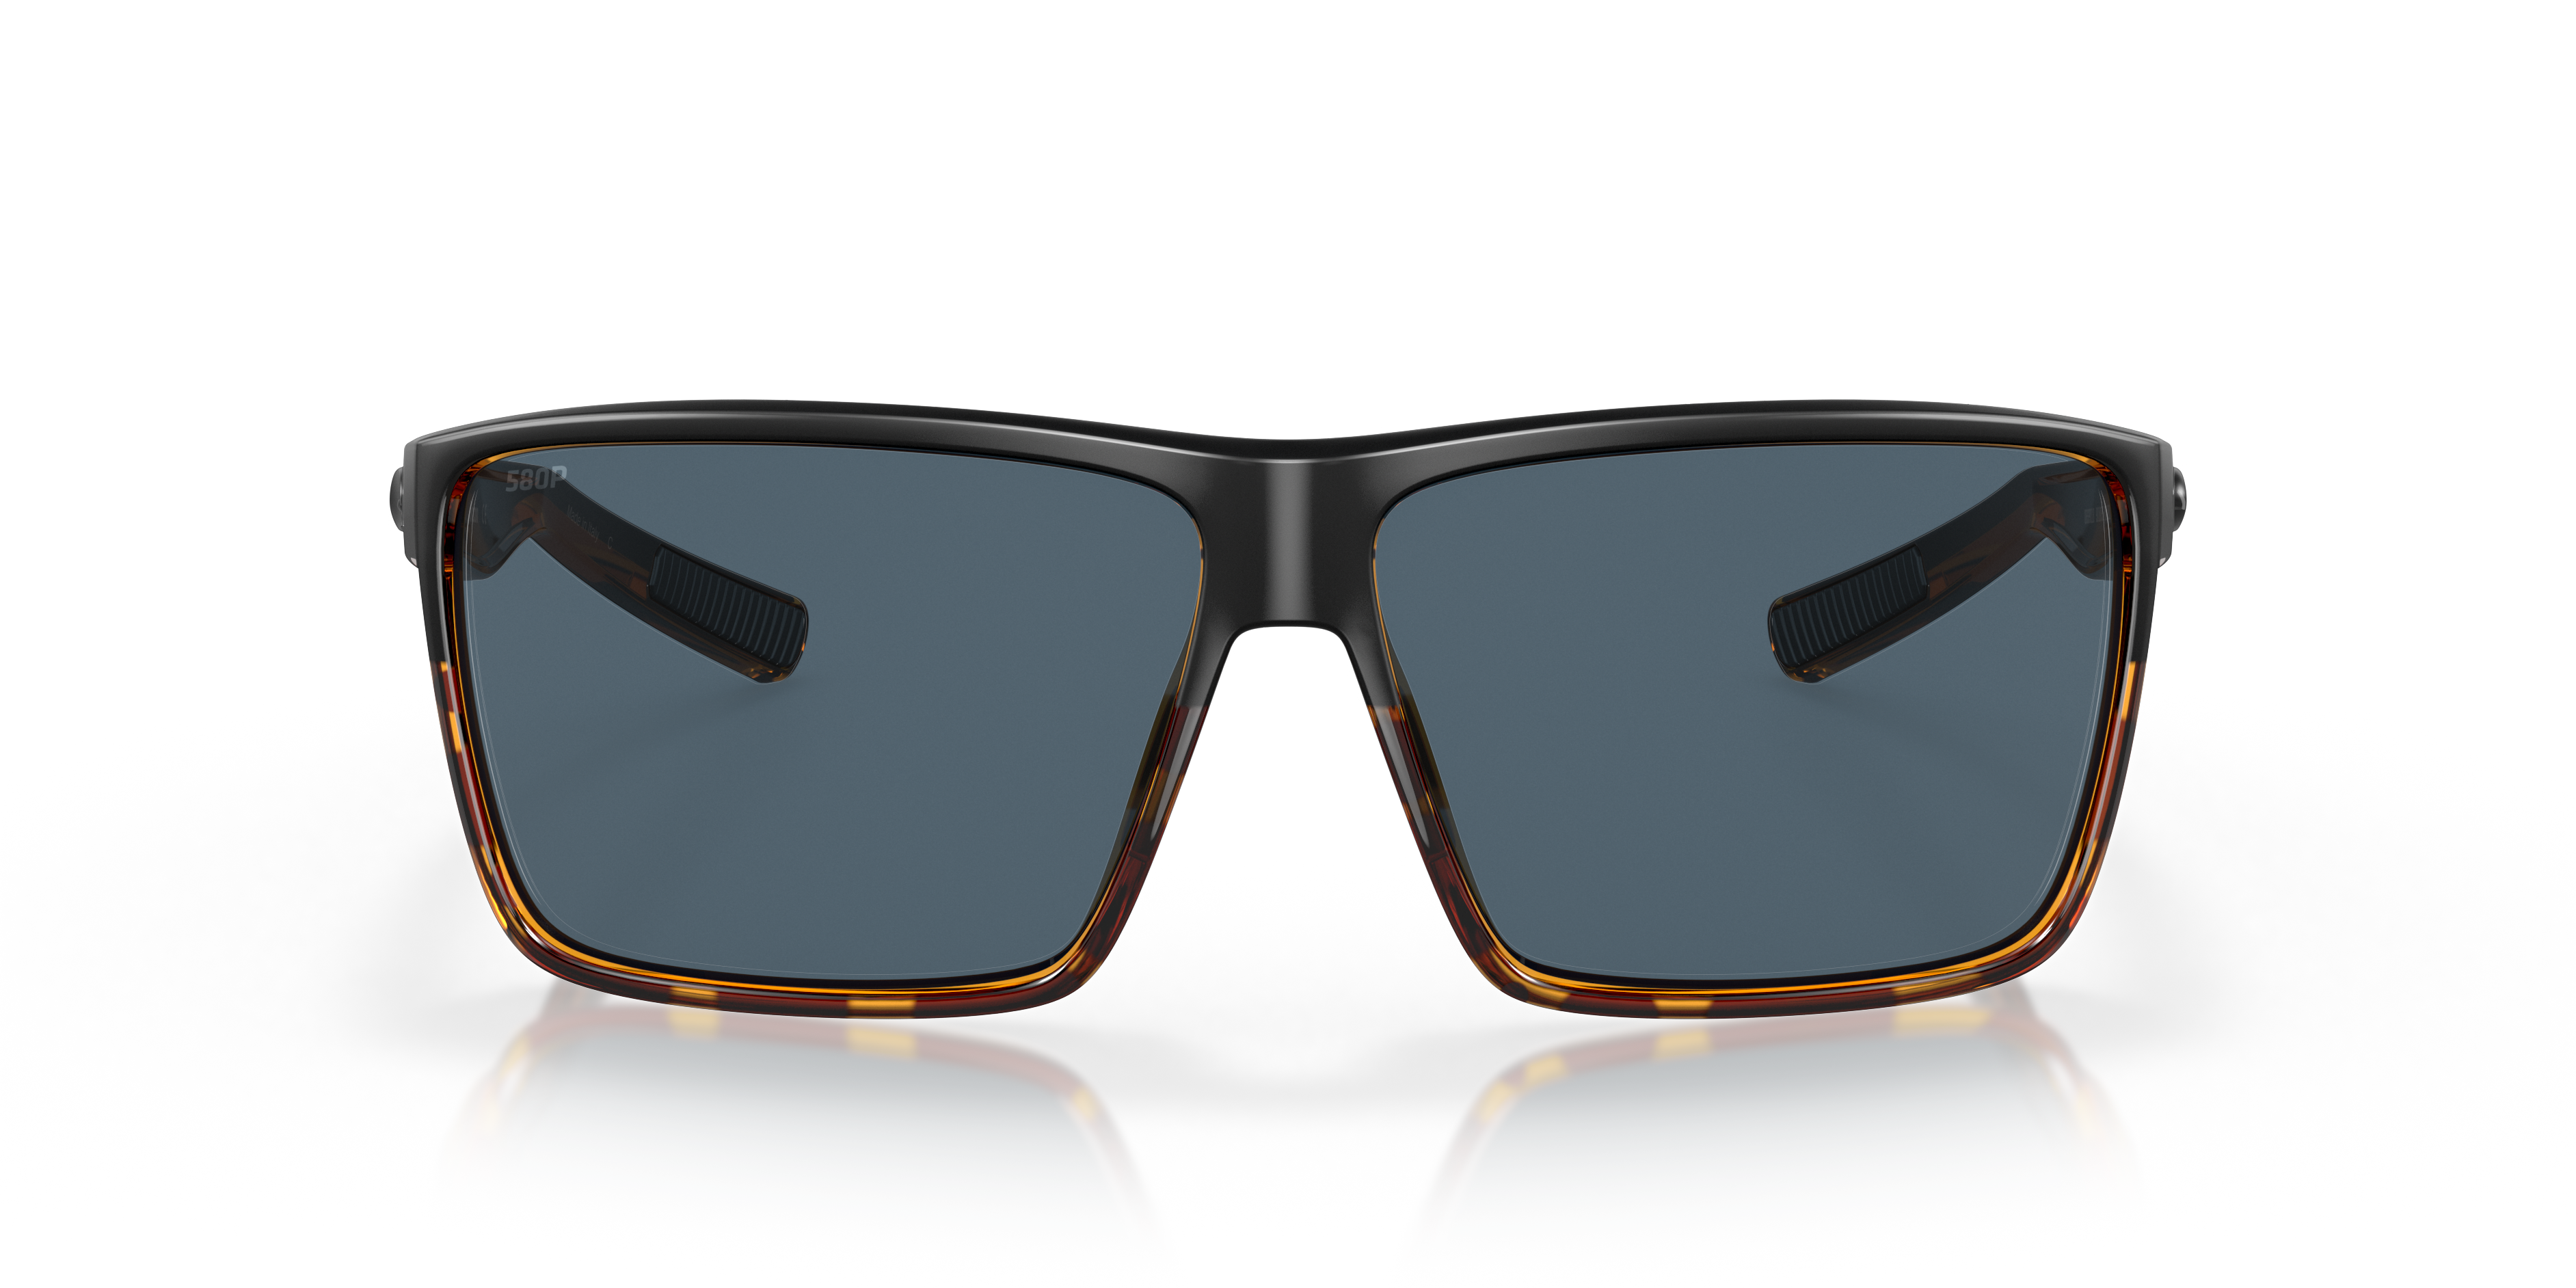 Rincon Polarized Sunglasses in Gray | Costa Del Mar®